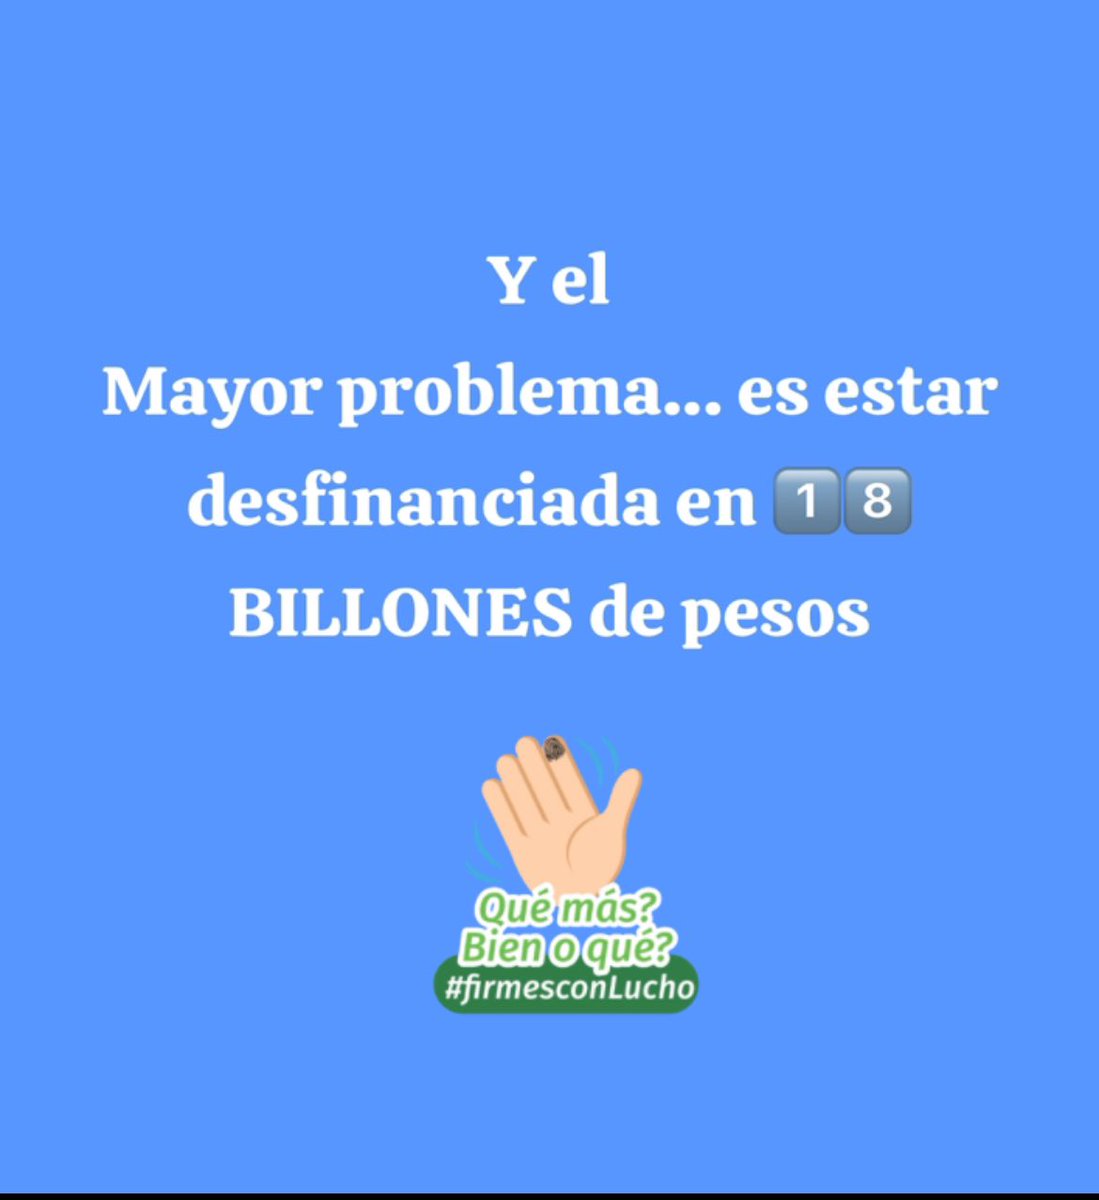 #atención  Una reforma a la salud  “DESFINANCIADA en 1️⃣8️⃣ BILLONES de pesos”??? 
#EchemosLápiz #foryoupage #fyp #Escribimosunanuevahistoria       #atención